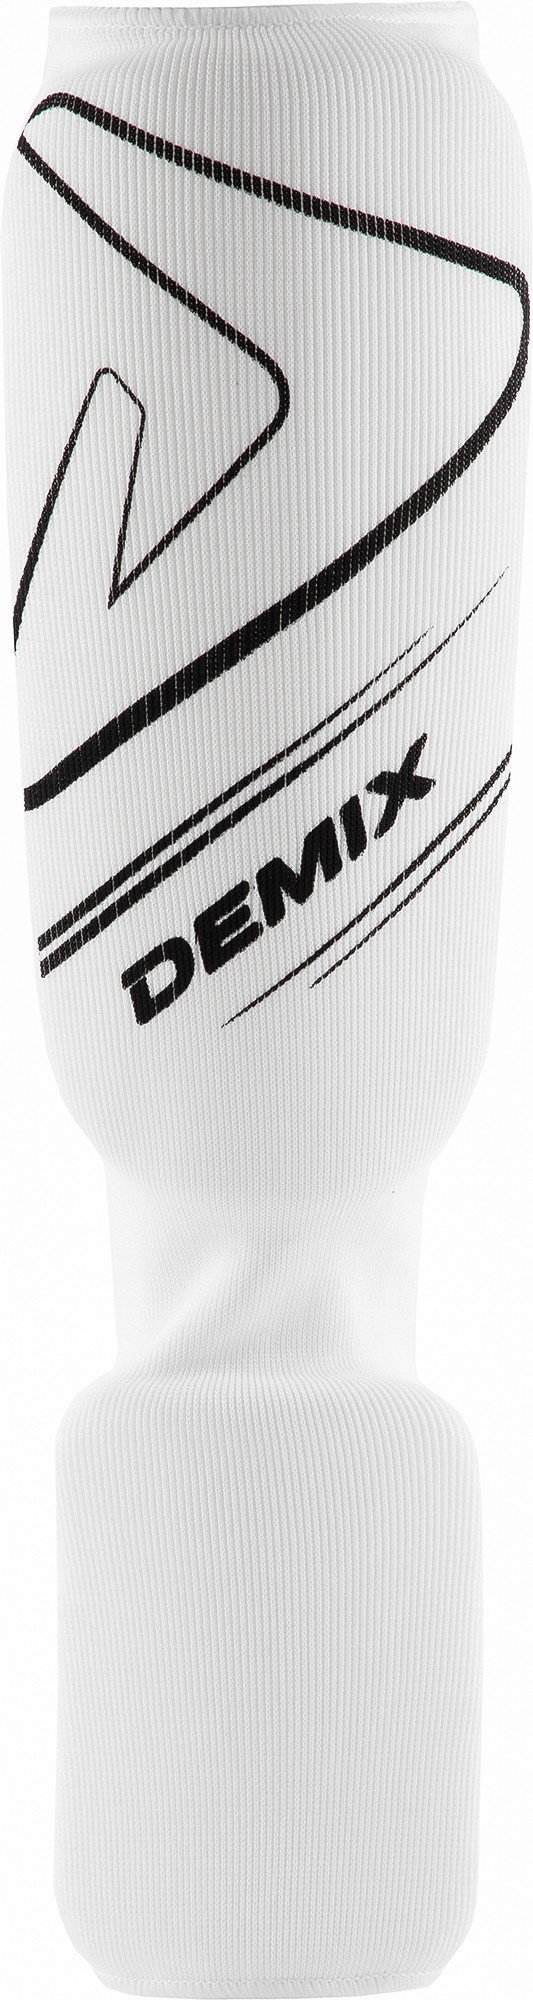 Захист гомілки Demix